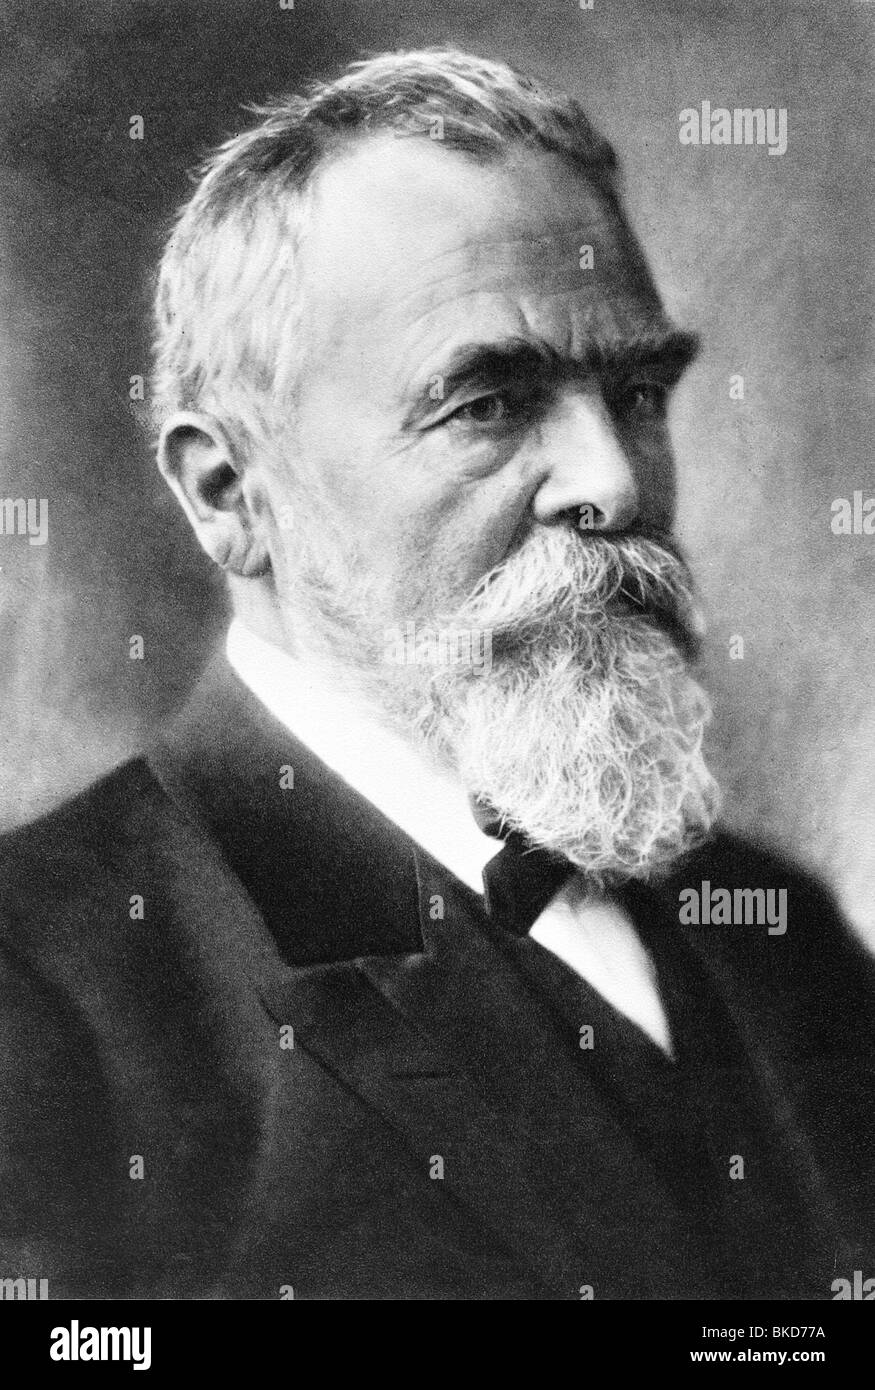 Linde, Carl von, 11.6.1842 - 16.11.1934, ingénieur allemand, inventeur du  réfrigérateur (1876), portrait, photo, vers les années 1920 Photo Stock -  Alamy